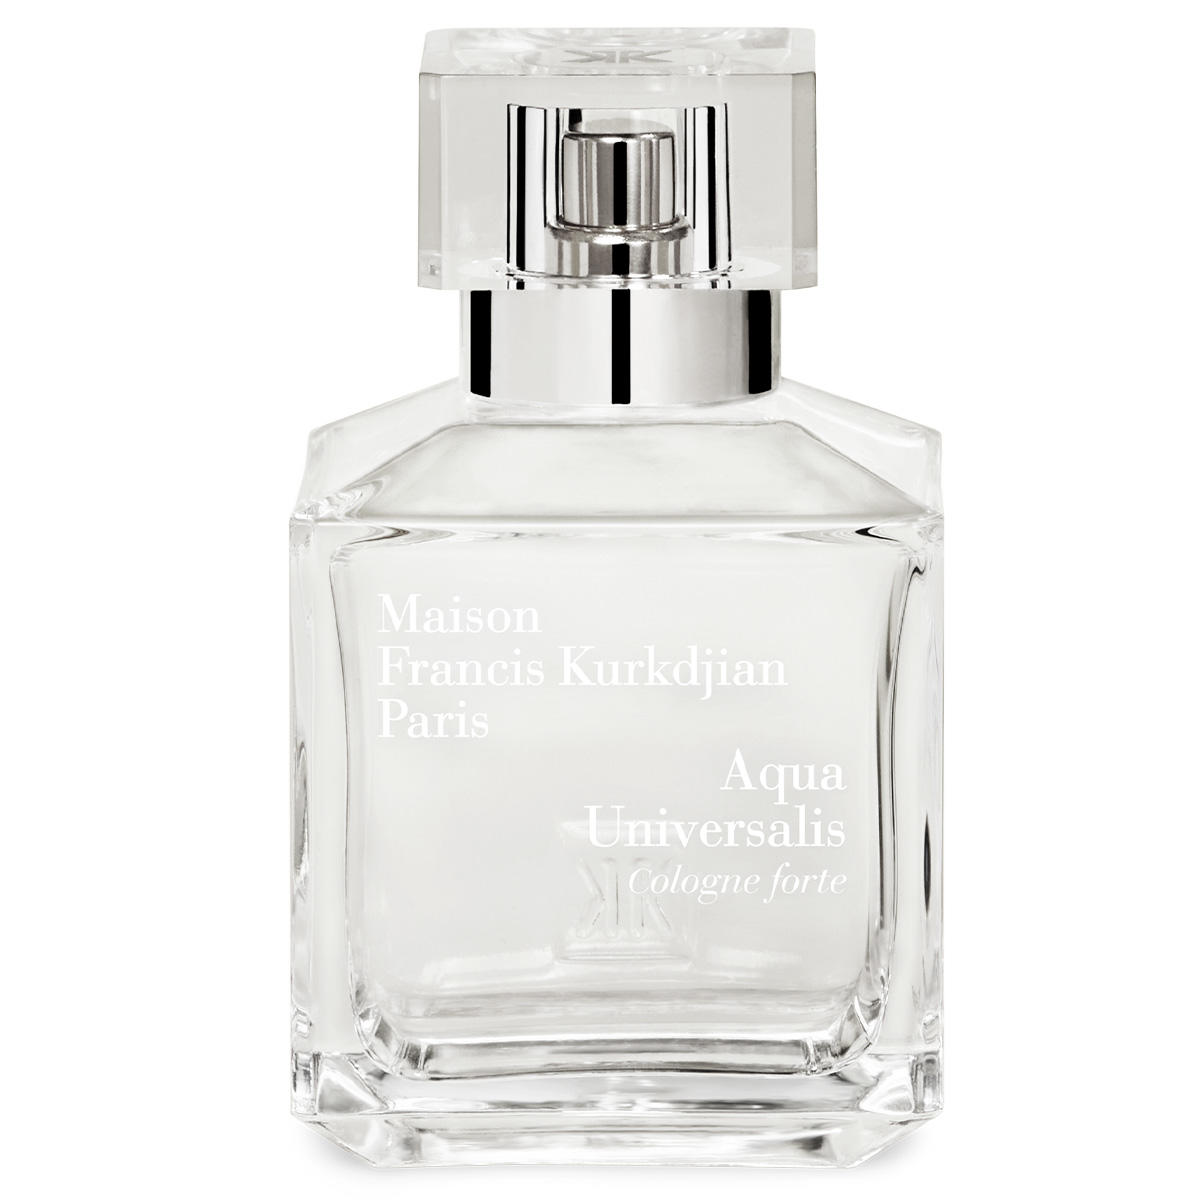 Maison Francis Kurkdjian Paris Aqua Universalis Cologne forte Eau de Parfum 70 ml - 1